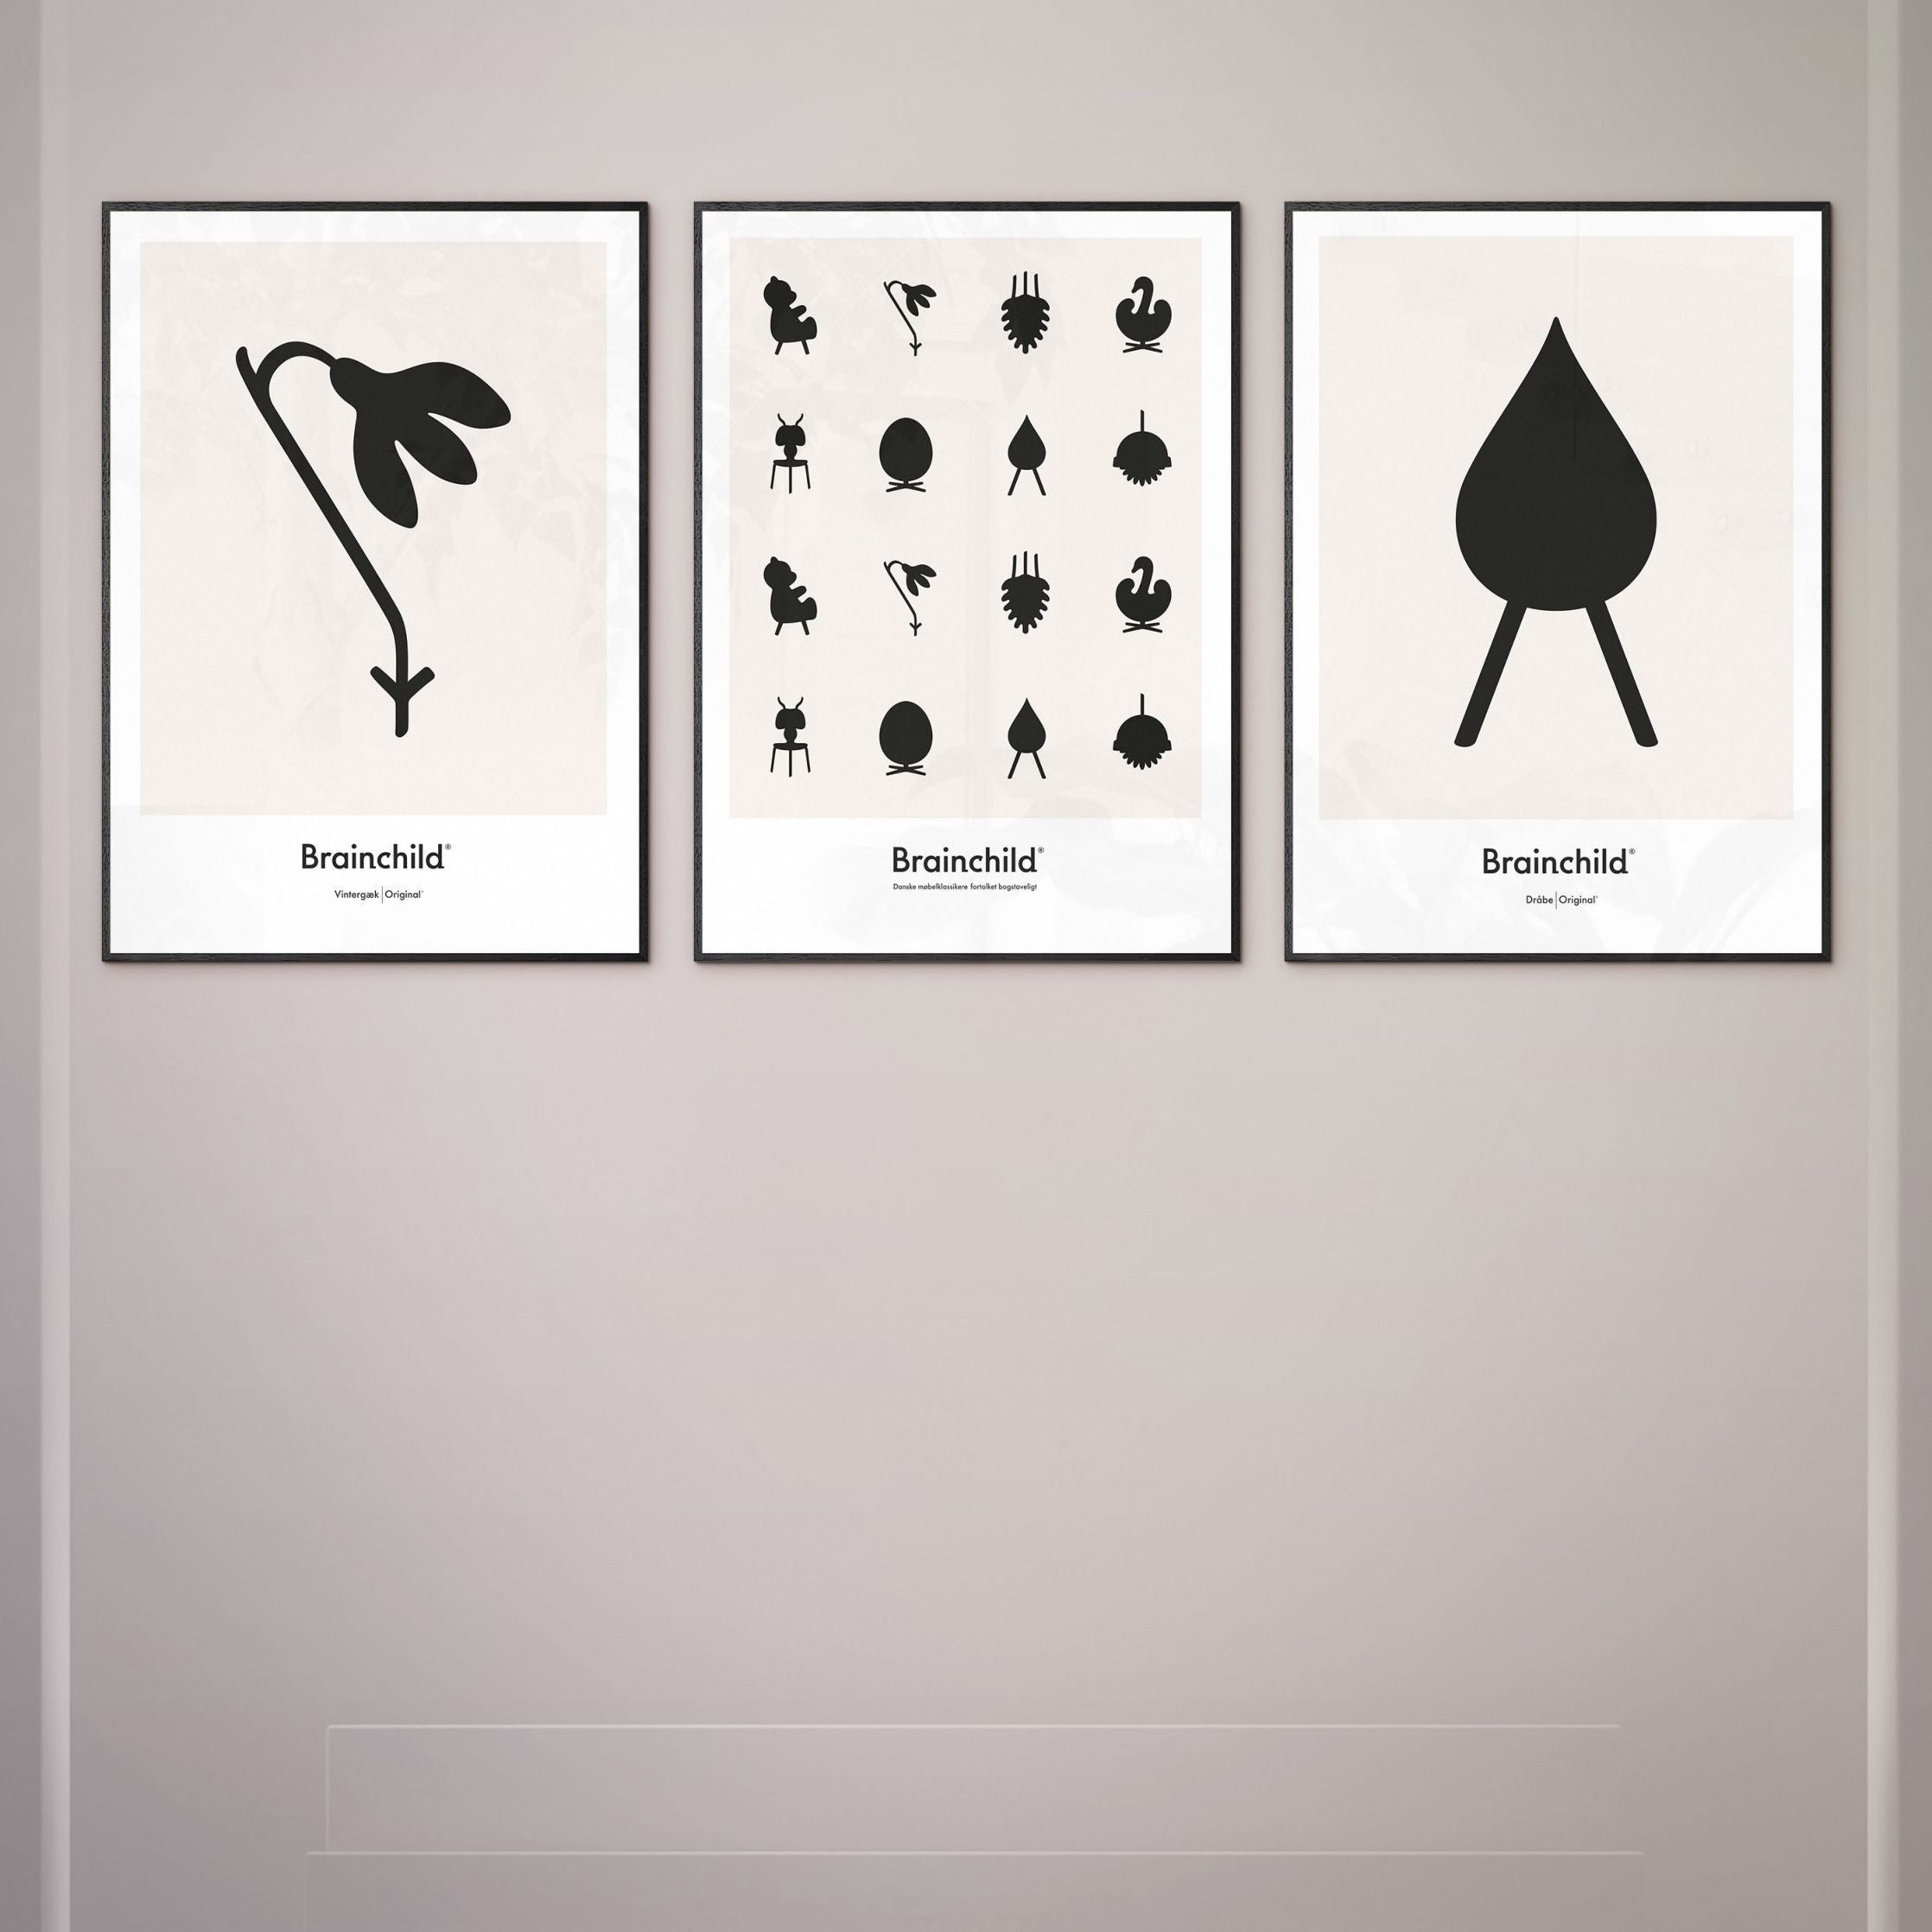 Brainchild Släpp designikon affisch, ram i mörkt trä 50x70 cm, grå